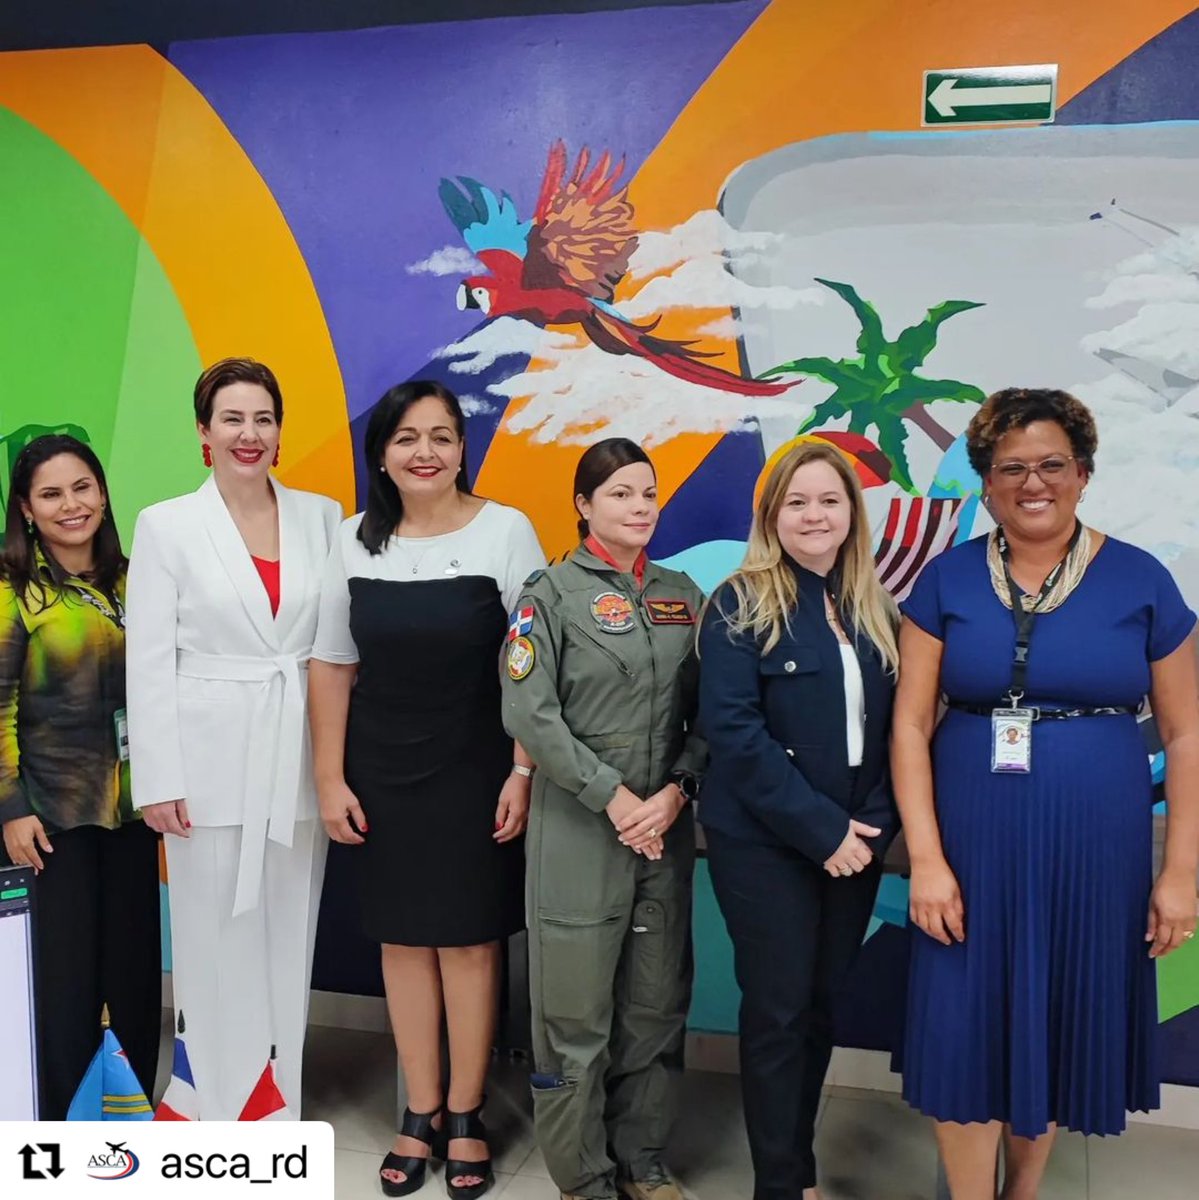 Desde el IDAC apoyamos todo tipo de iniciativas que se desarrollen en procura de destacar el importante rol de todas las mujeres que tan dignamente nos representan en el sector aeronáutico. En nombre de nuestra institución, participó la directora de la ASCA, Clara Fernández.